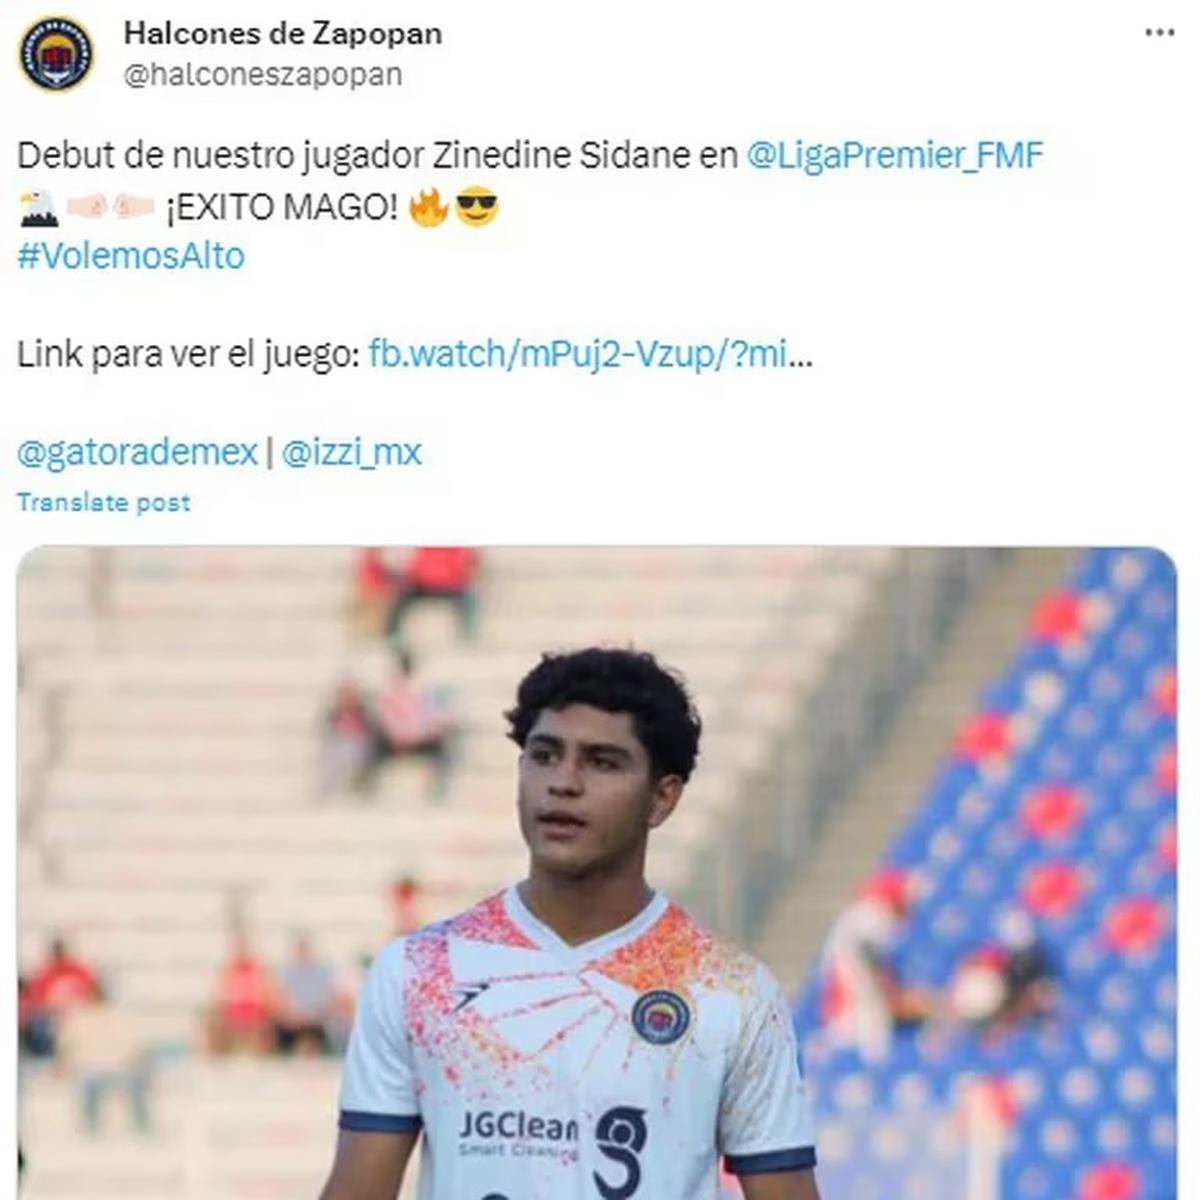 Zinedine Sidane | El mexicano hizo su debut en Halcones de Zapopan en la tercera división mexicana.